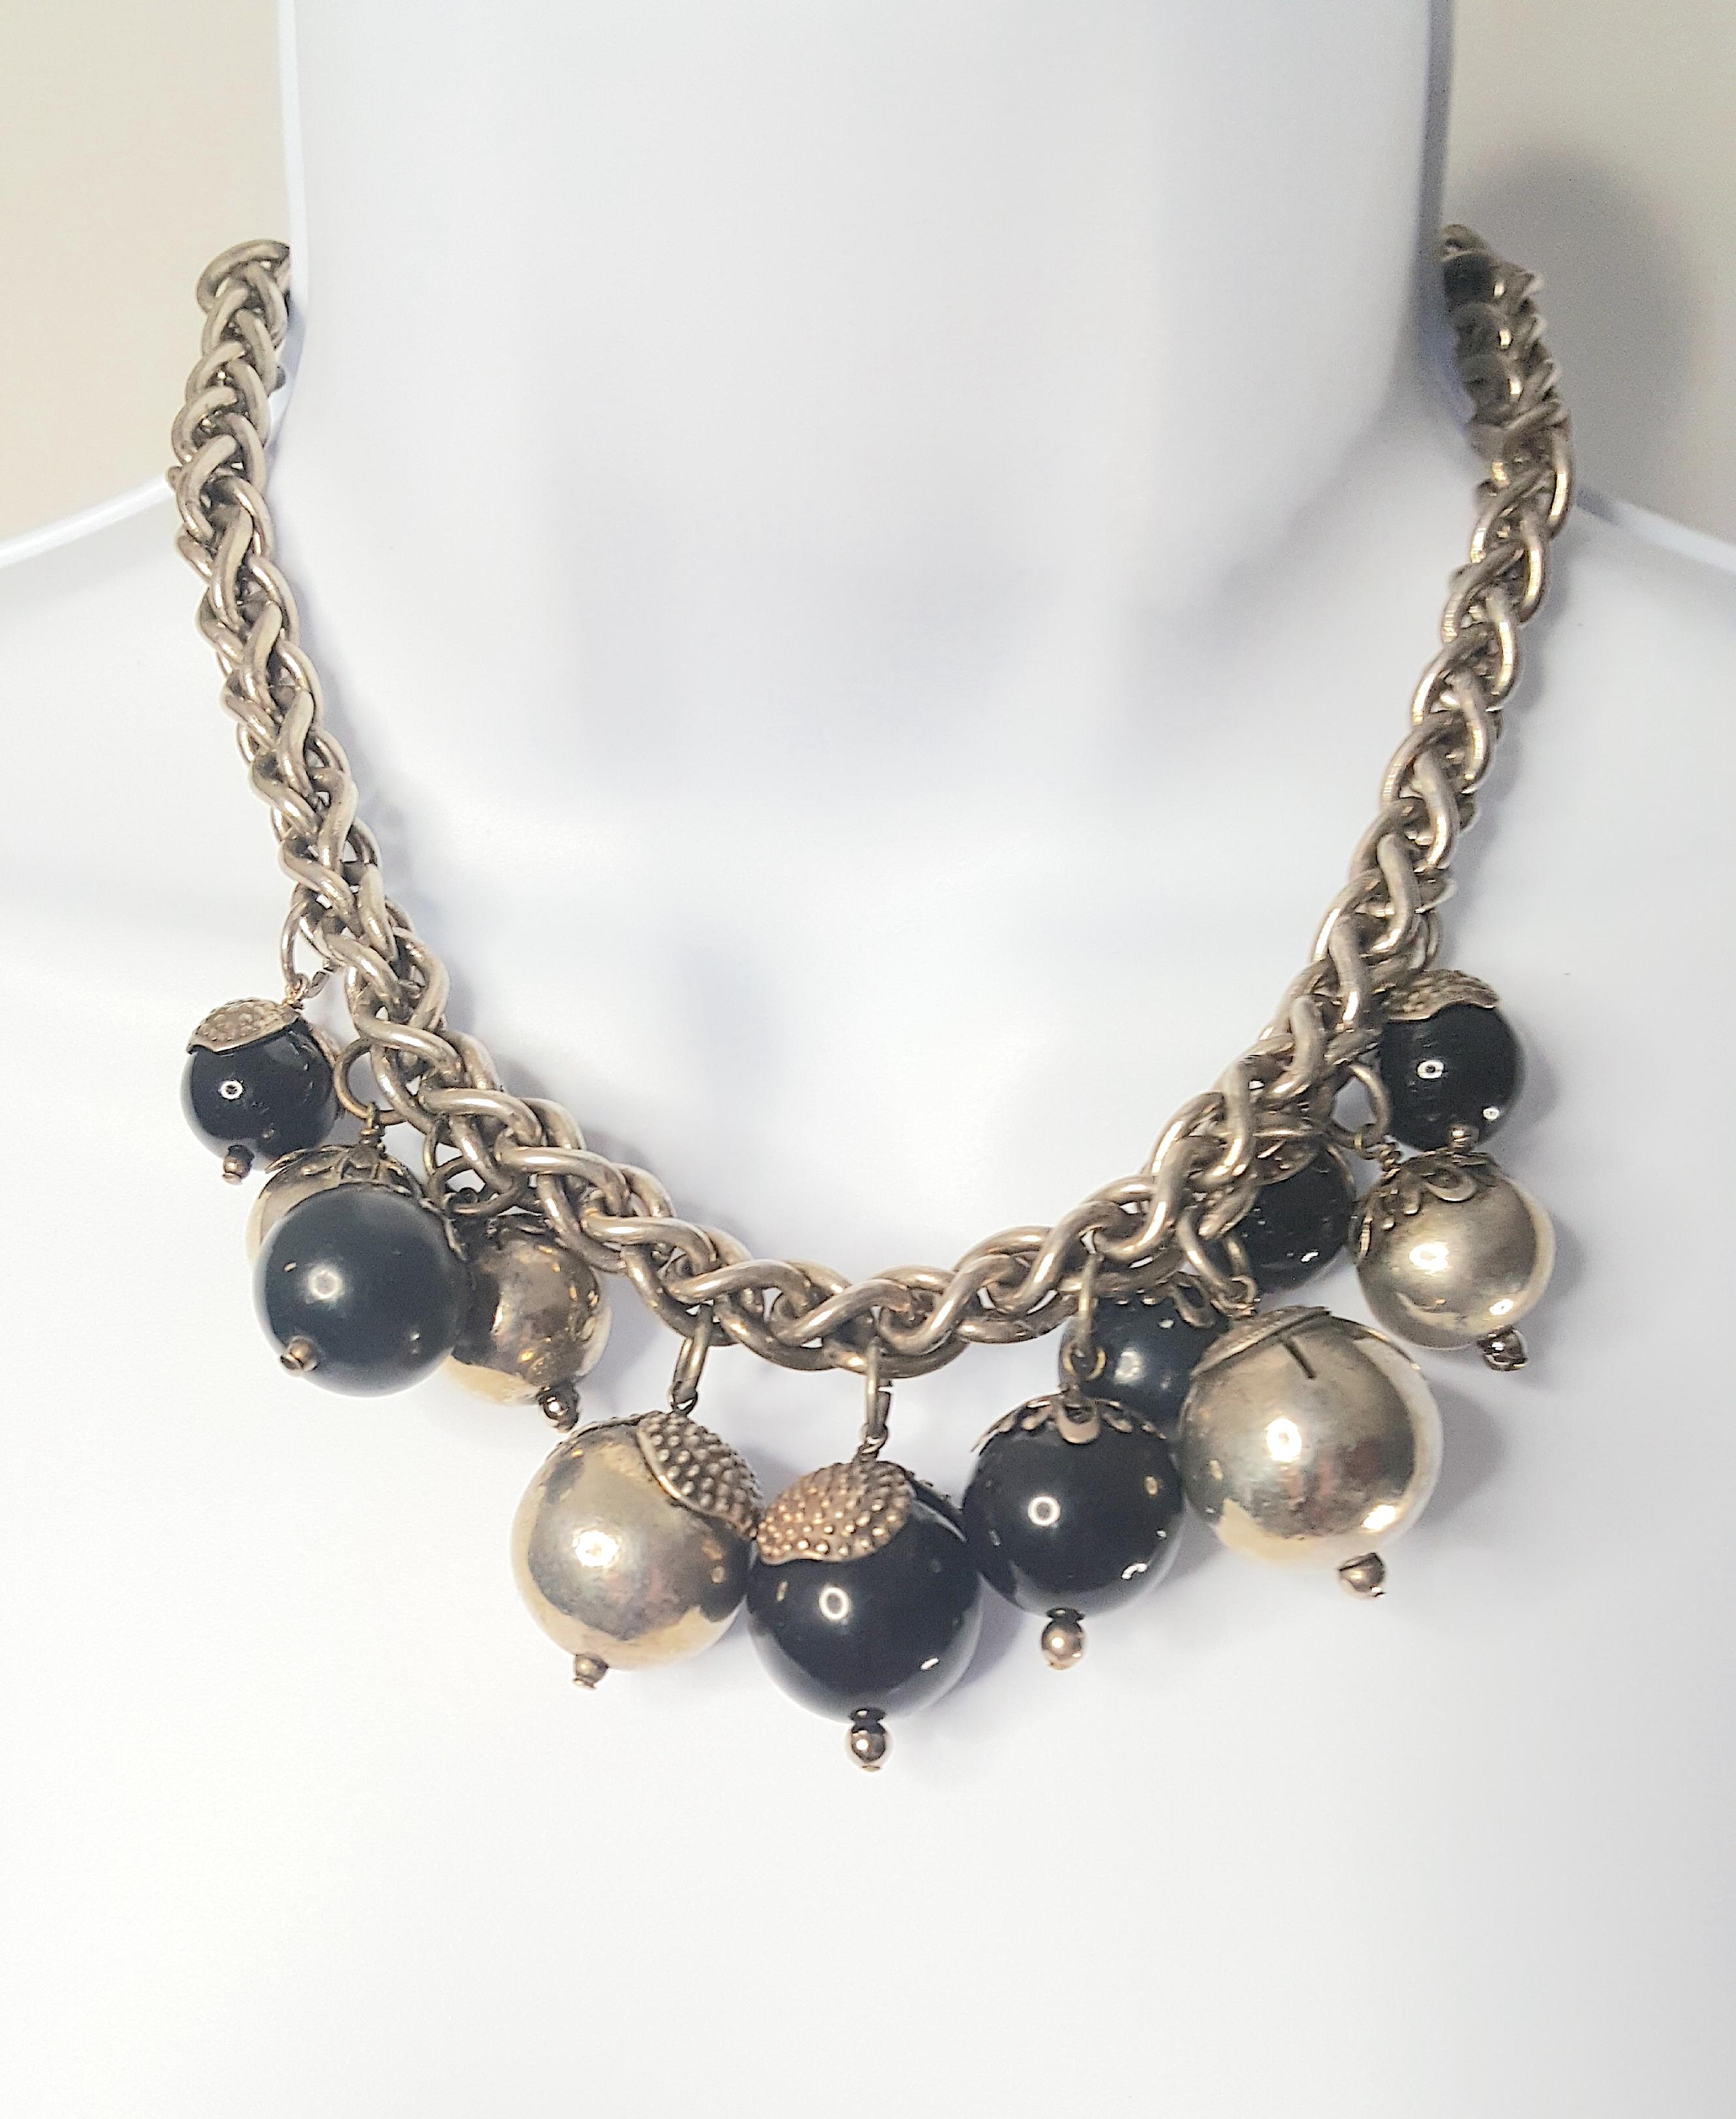 Mit 12 großen, patinierten Perlenanhängern, die von dem Pariser Louis Rousselet - dem Meister der Glas- und Metallornamente für französische Couture-Modehäuser seit 1920 - handgefertigt wurden, ist diese schwere Silberkette im einzigartigen,